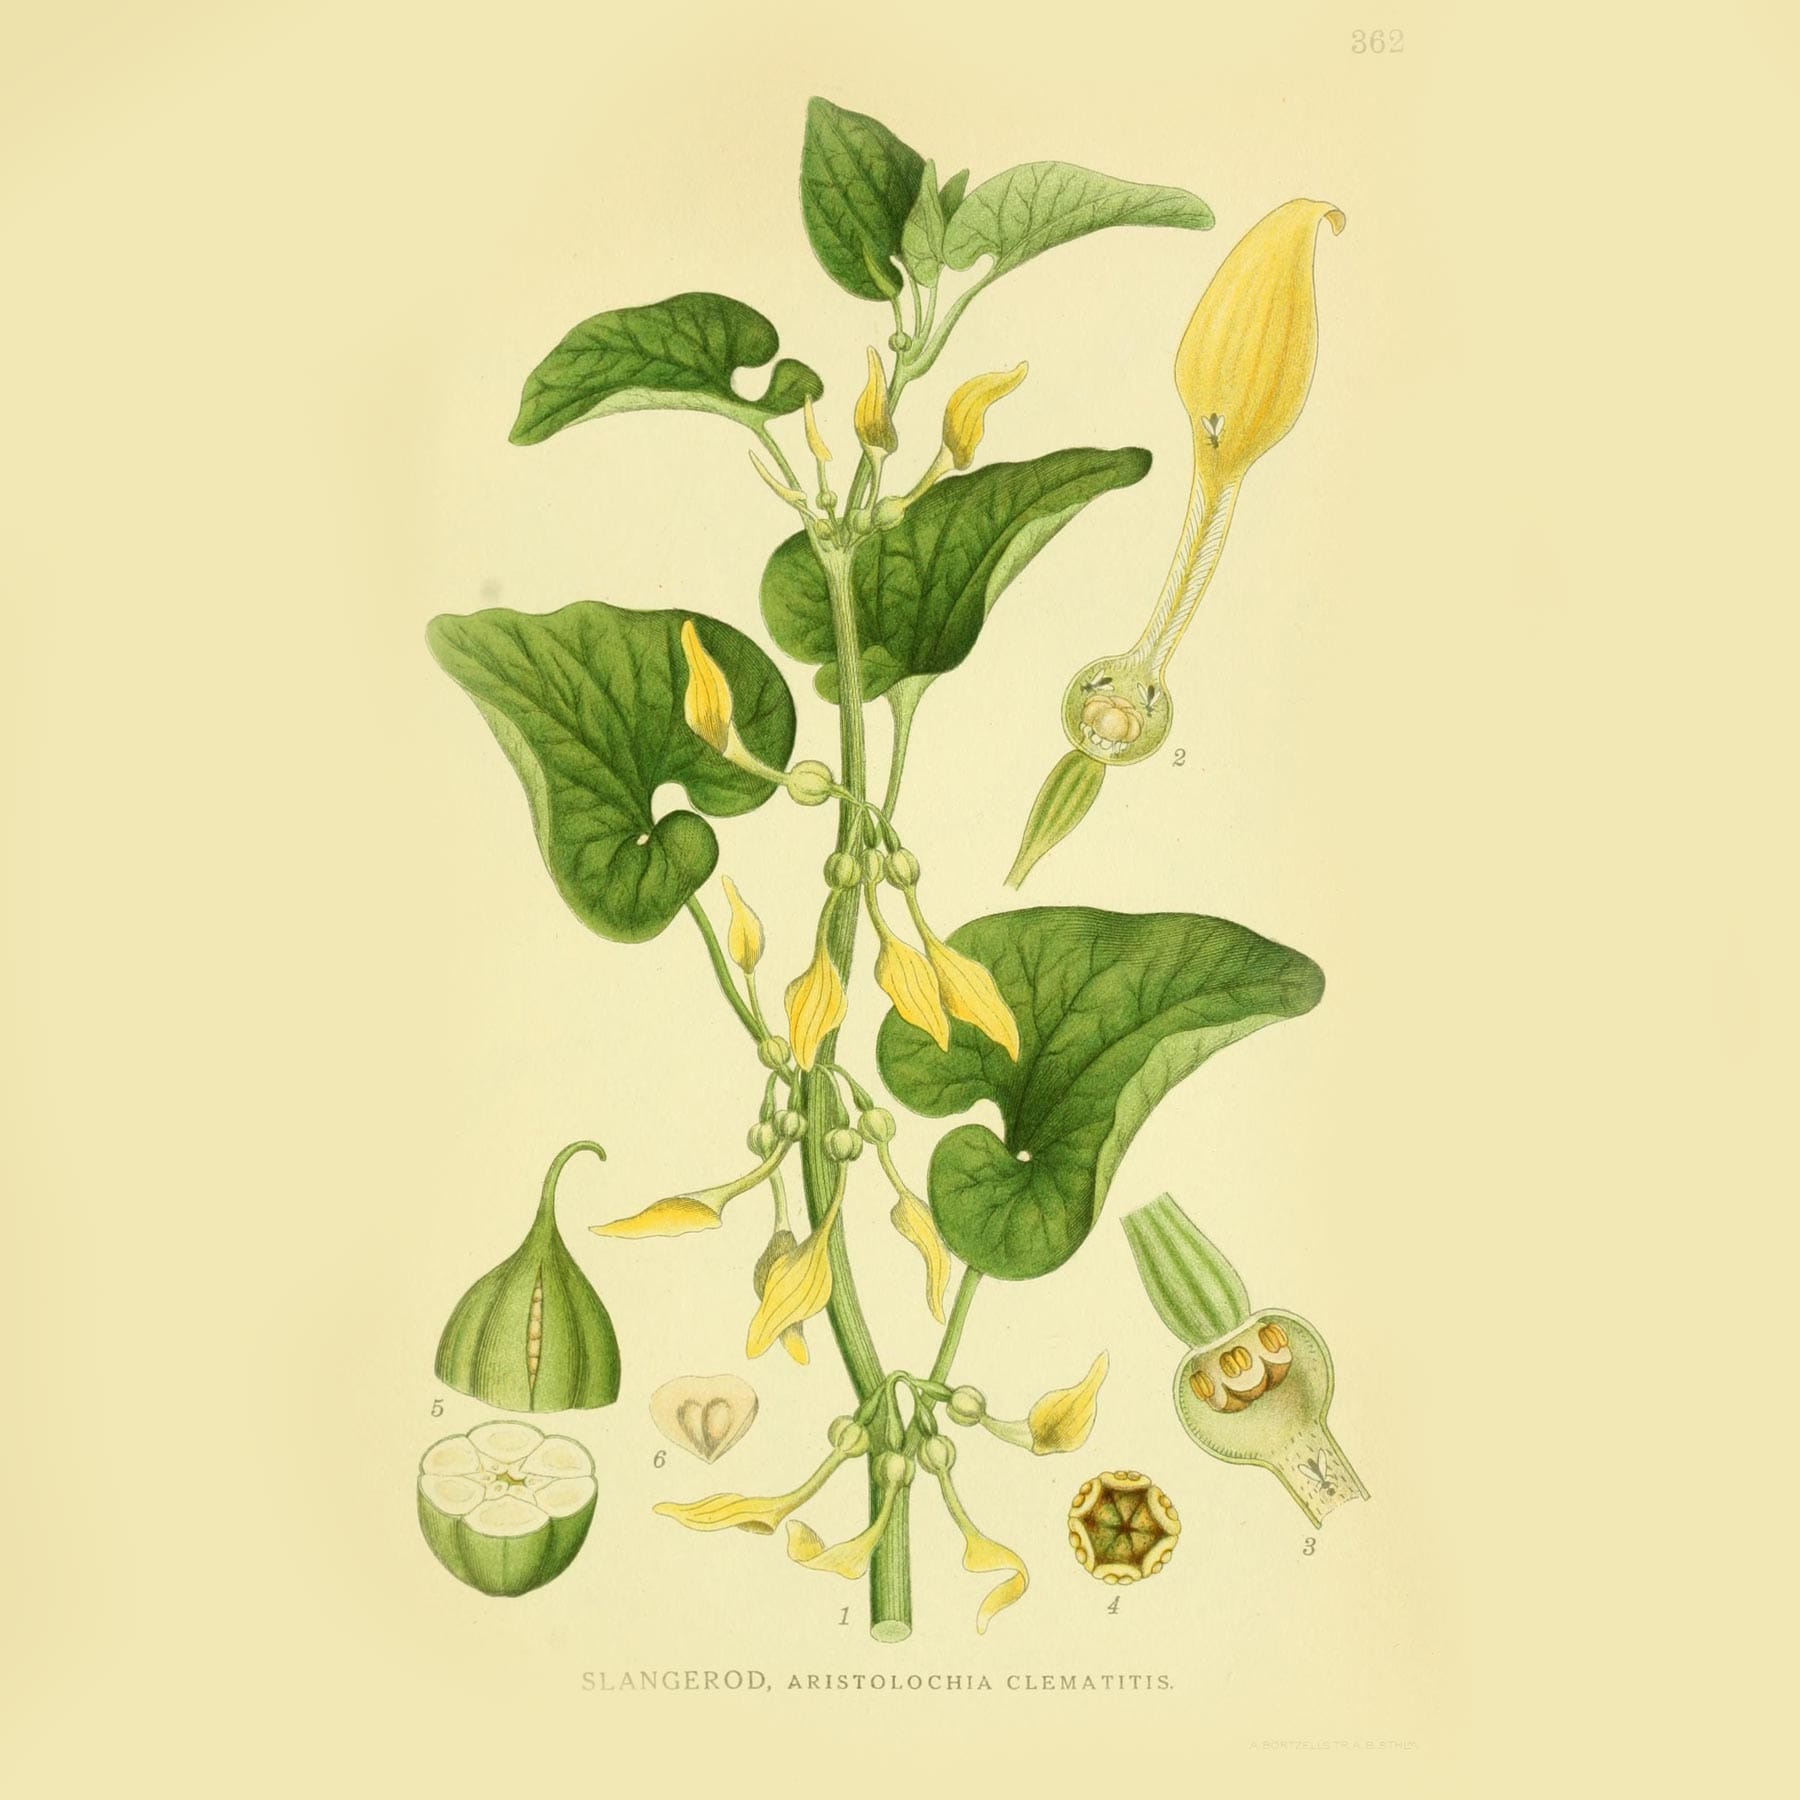 Кирказон ломоносовидный (Aristolochia clematitis). Источник: plantgenera.org